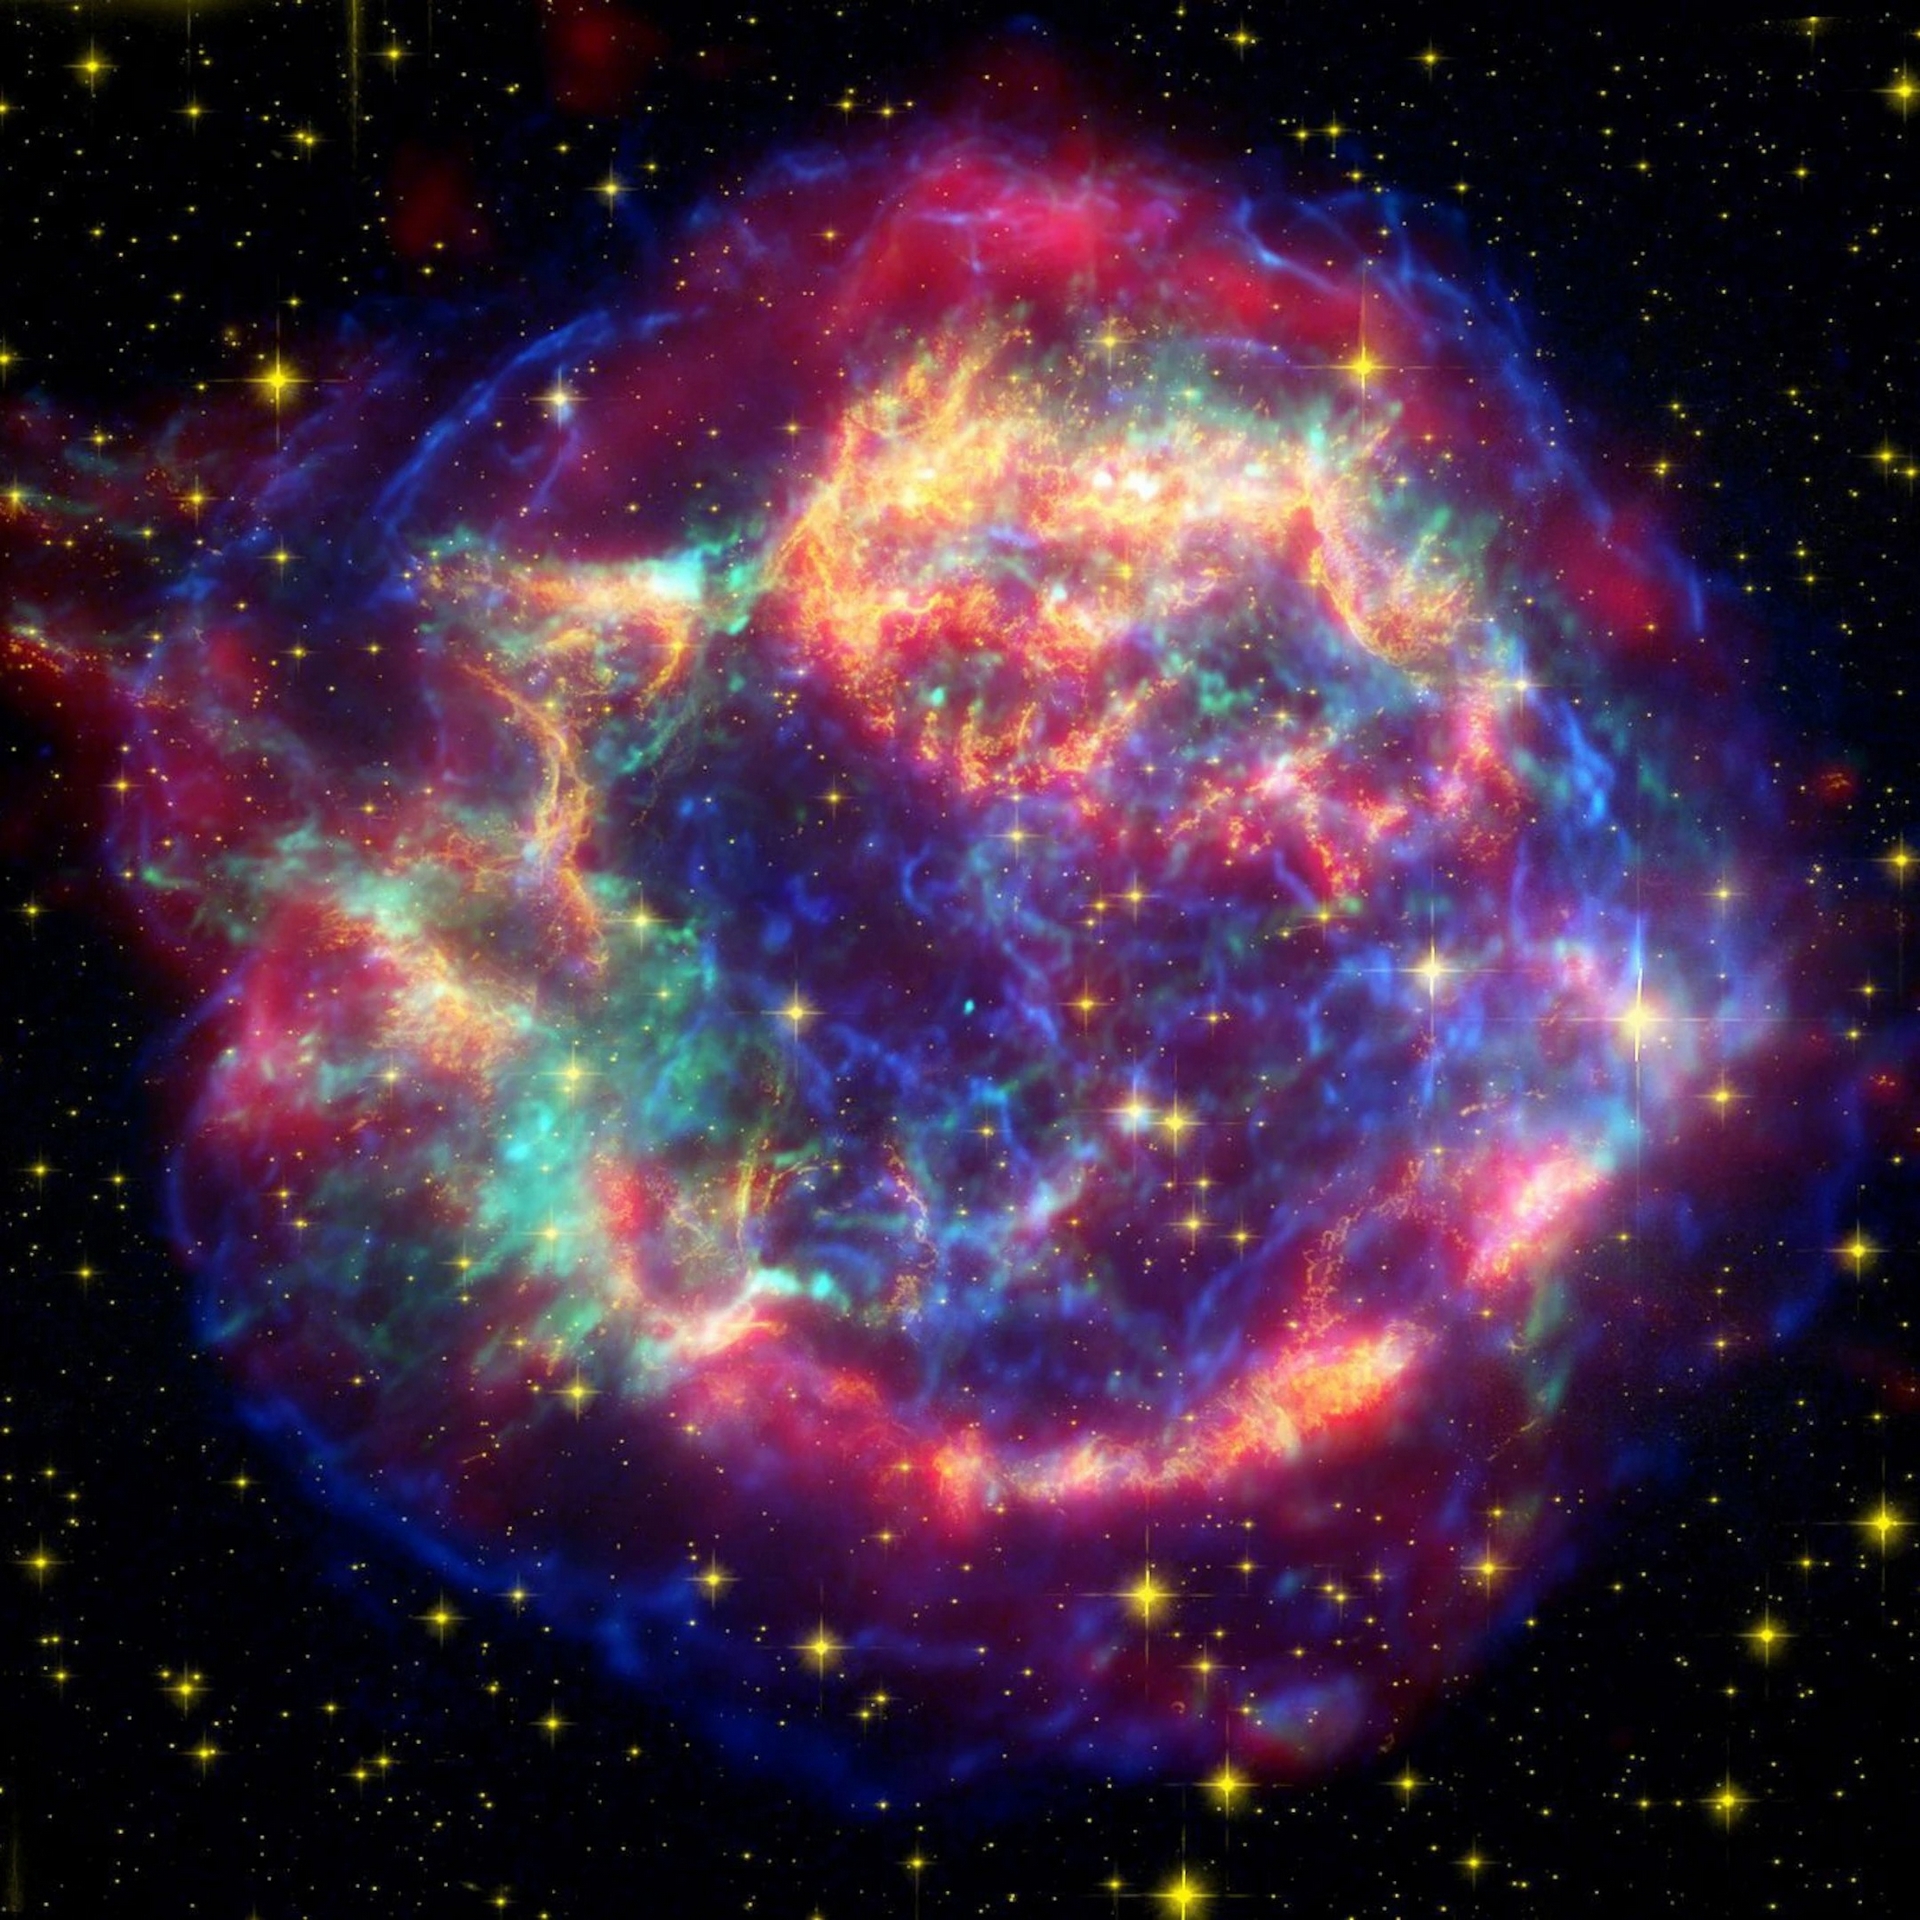 1.	仙后座A（Cassiopeia A）是325年前死於猛烈超新星爆炸的巨大恆星殘骸。它由稱為中子星的死星和在恆星死亡時炸開物質的外圍殼層組成。這張影像利用三座NASA觀測不同波長光線的天文臺影像合成：史畢哲太空望遠鏡（Spitzer Space Telescope）的紅外數據（紅色）、哈伯的可見光數據（黃色）和錢卓的X射線數據（綠色和藍色）。IMAGE BY NASA/JPL-CALTECH/STSCI/CXC/SAO ANIMATION: NASA/JPL-CALTECH/UNIV. OF ARIZ./STSCI/CXC/SAO